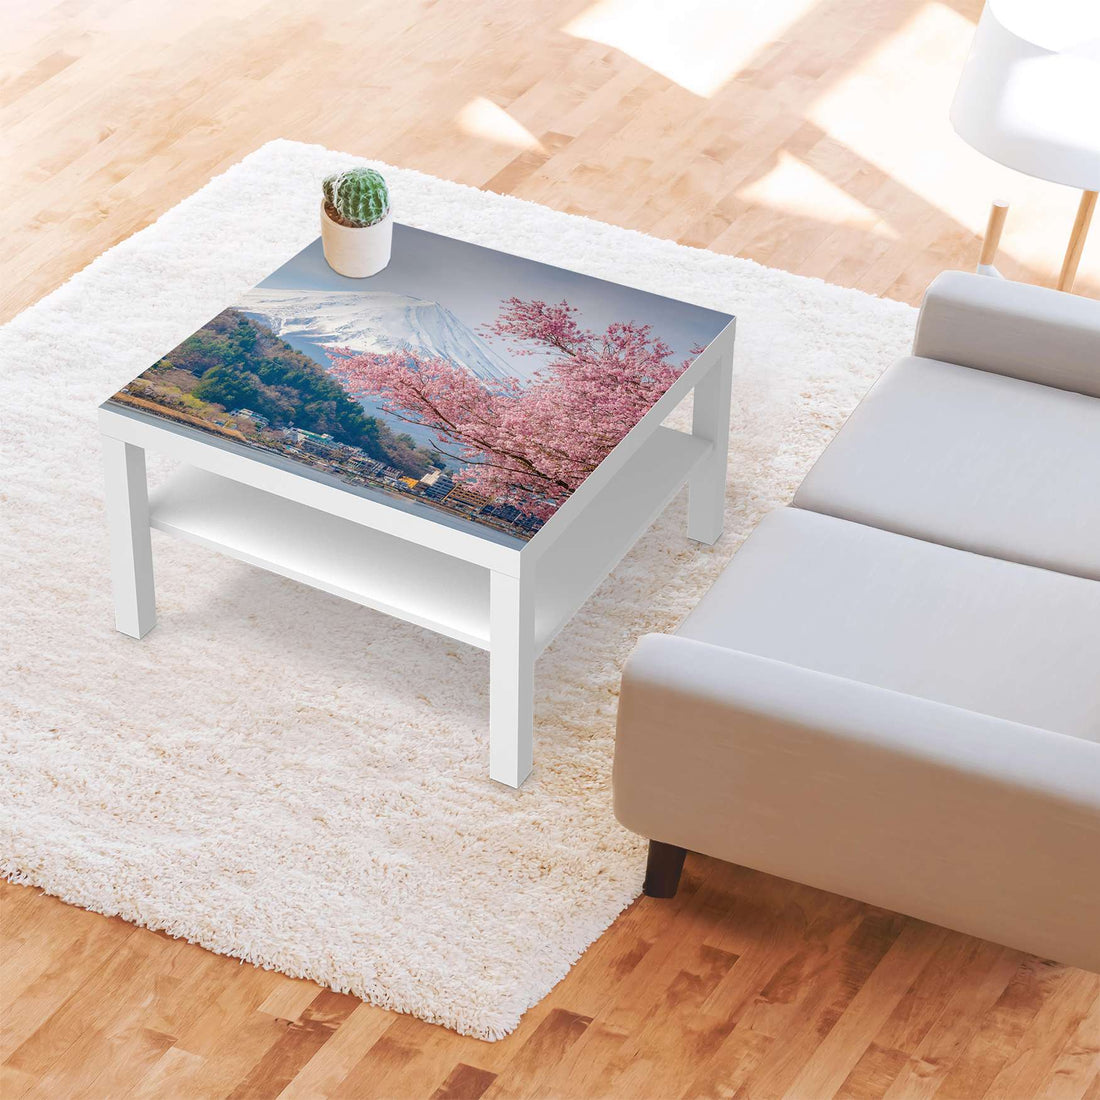 Selbstklebende Folie Mount Fuji - IKEA Lack Tisch 78x78 cm - Wohnzimmer